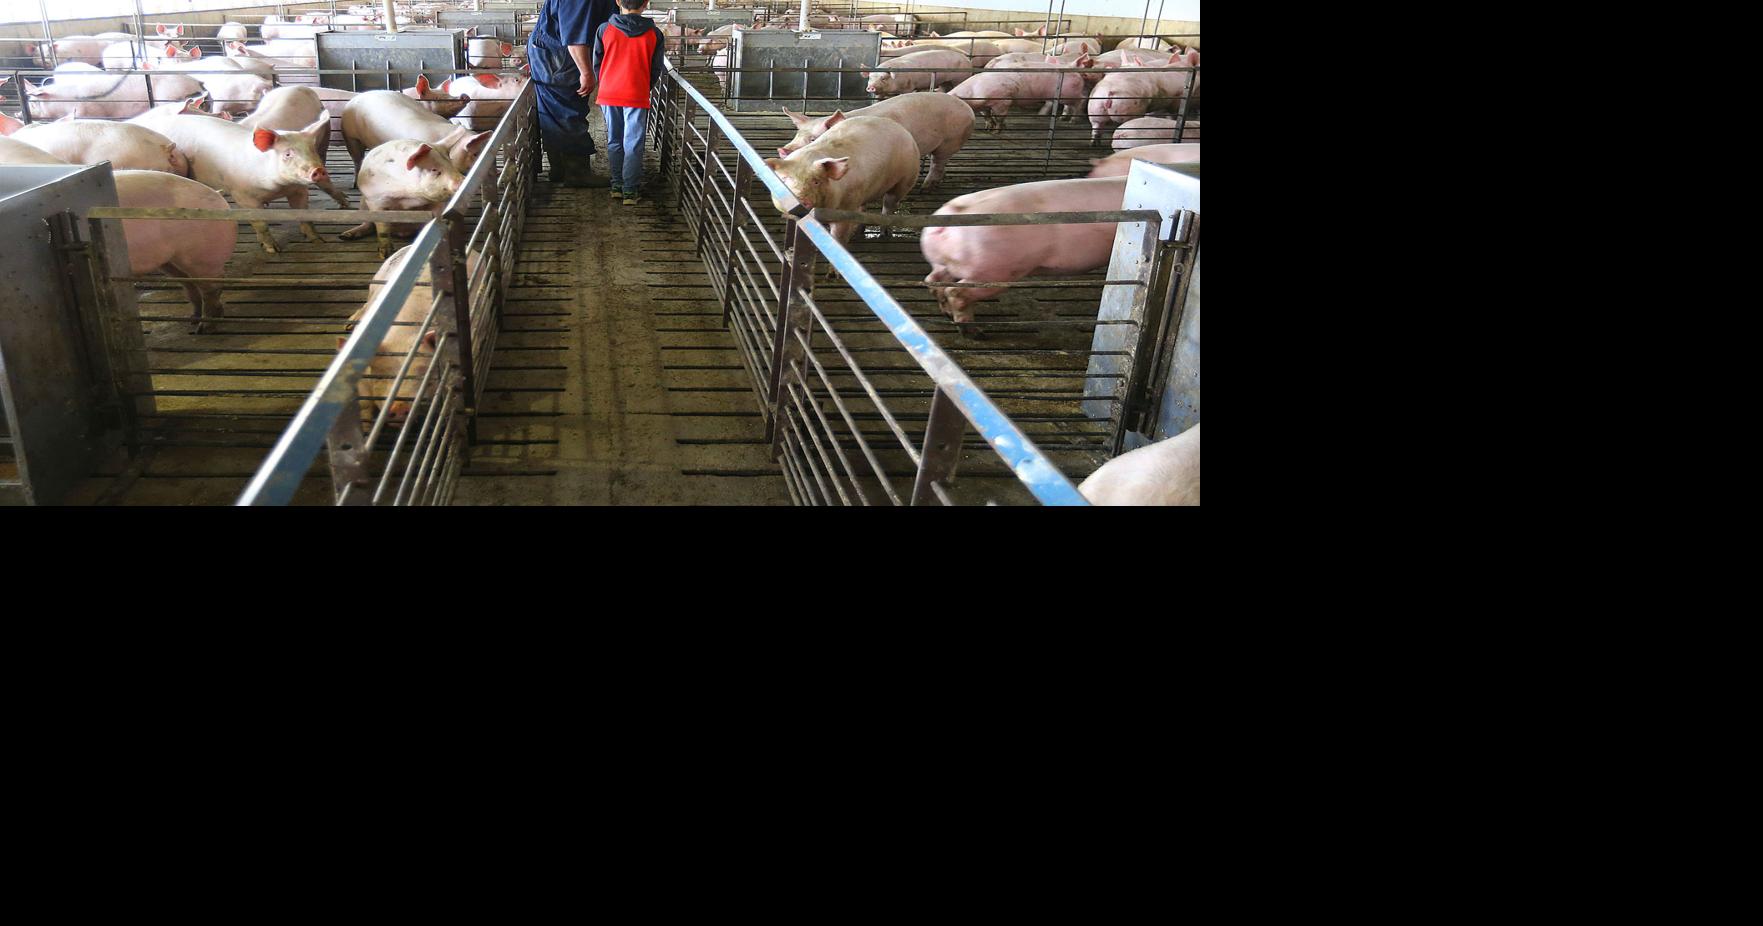 A kick in the teeth': Local hog farmers devastated by pork